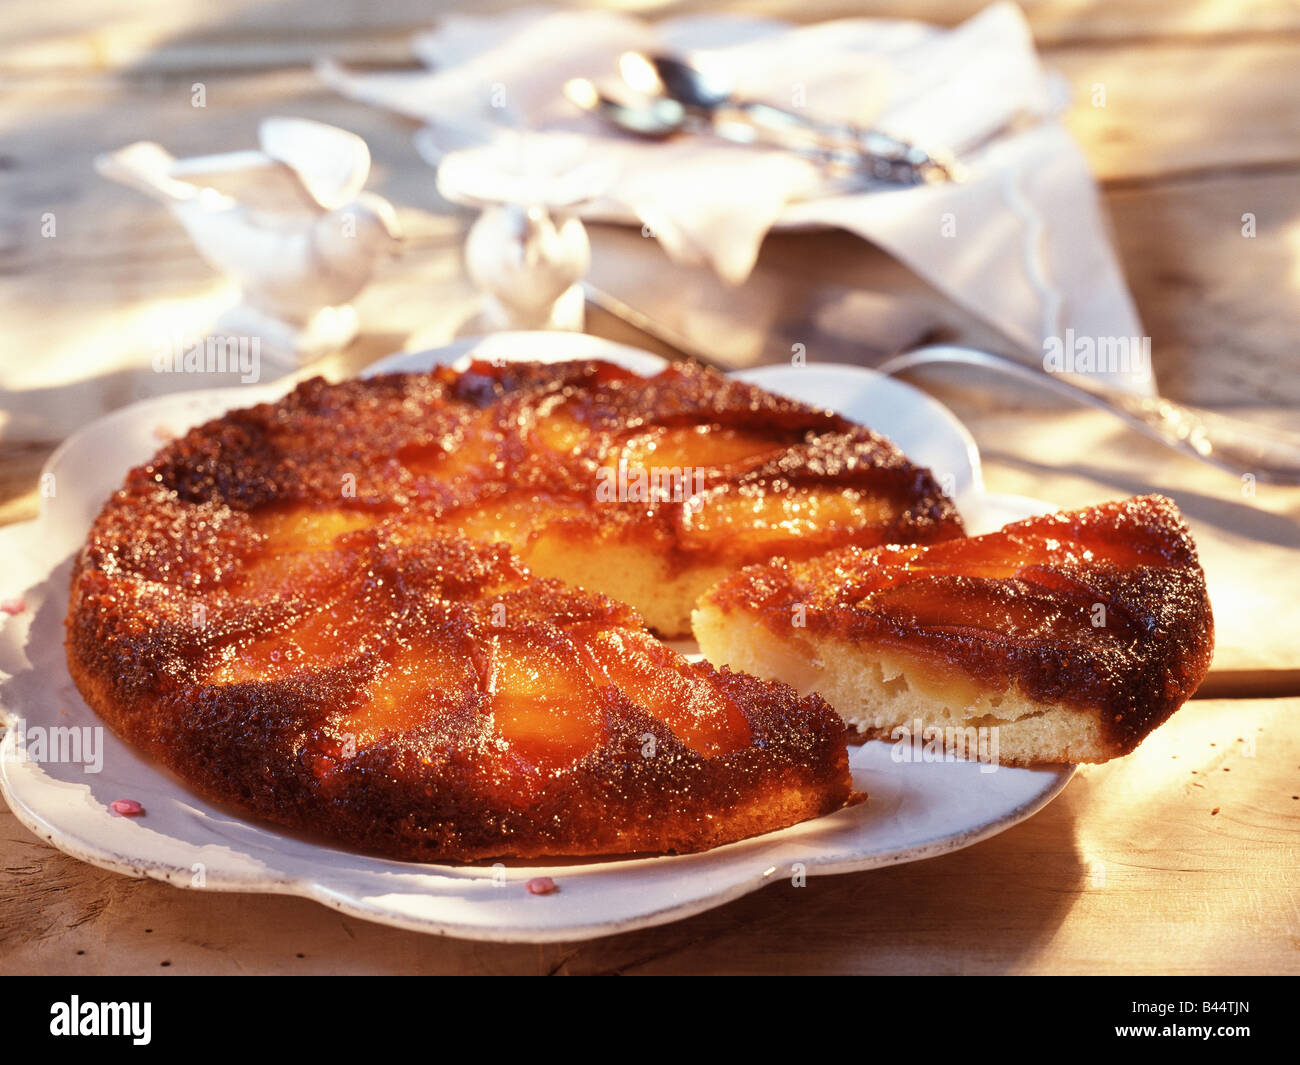 Простой рецепт шарлотки с яблоками на сковороде. Яблочный пирог на сковороде. Шарлотка с яблоками на сковороде. Пирог с яблоками на сковороде. Пирог из яблок на сковороде.